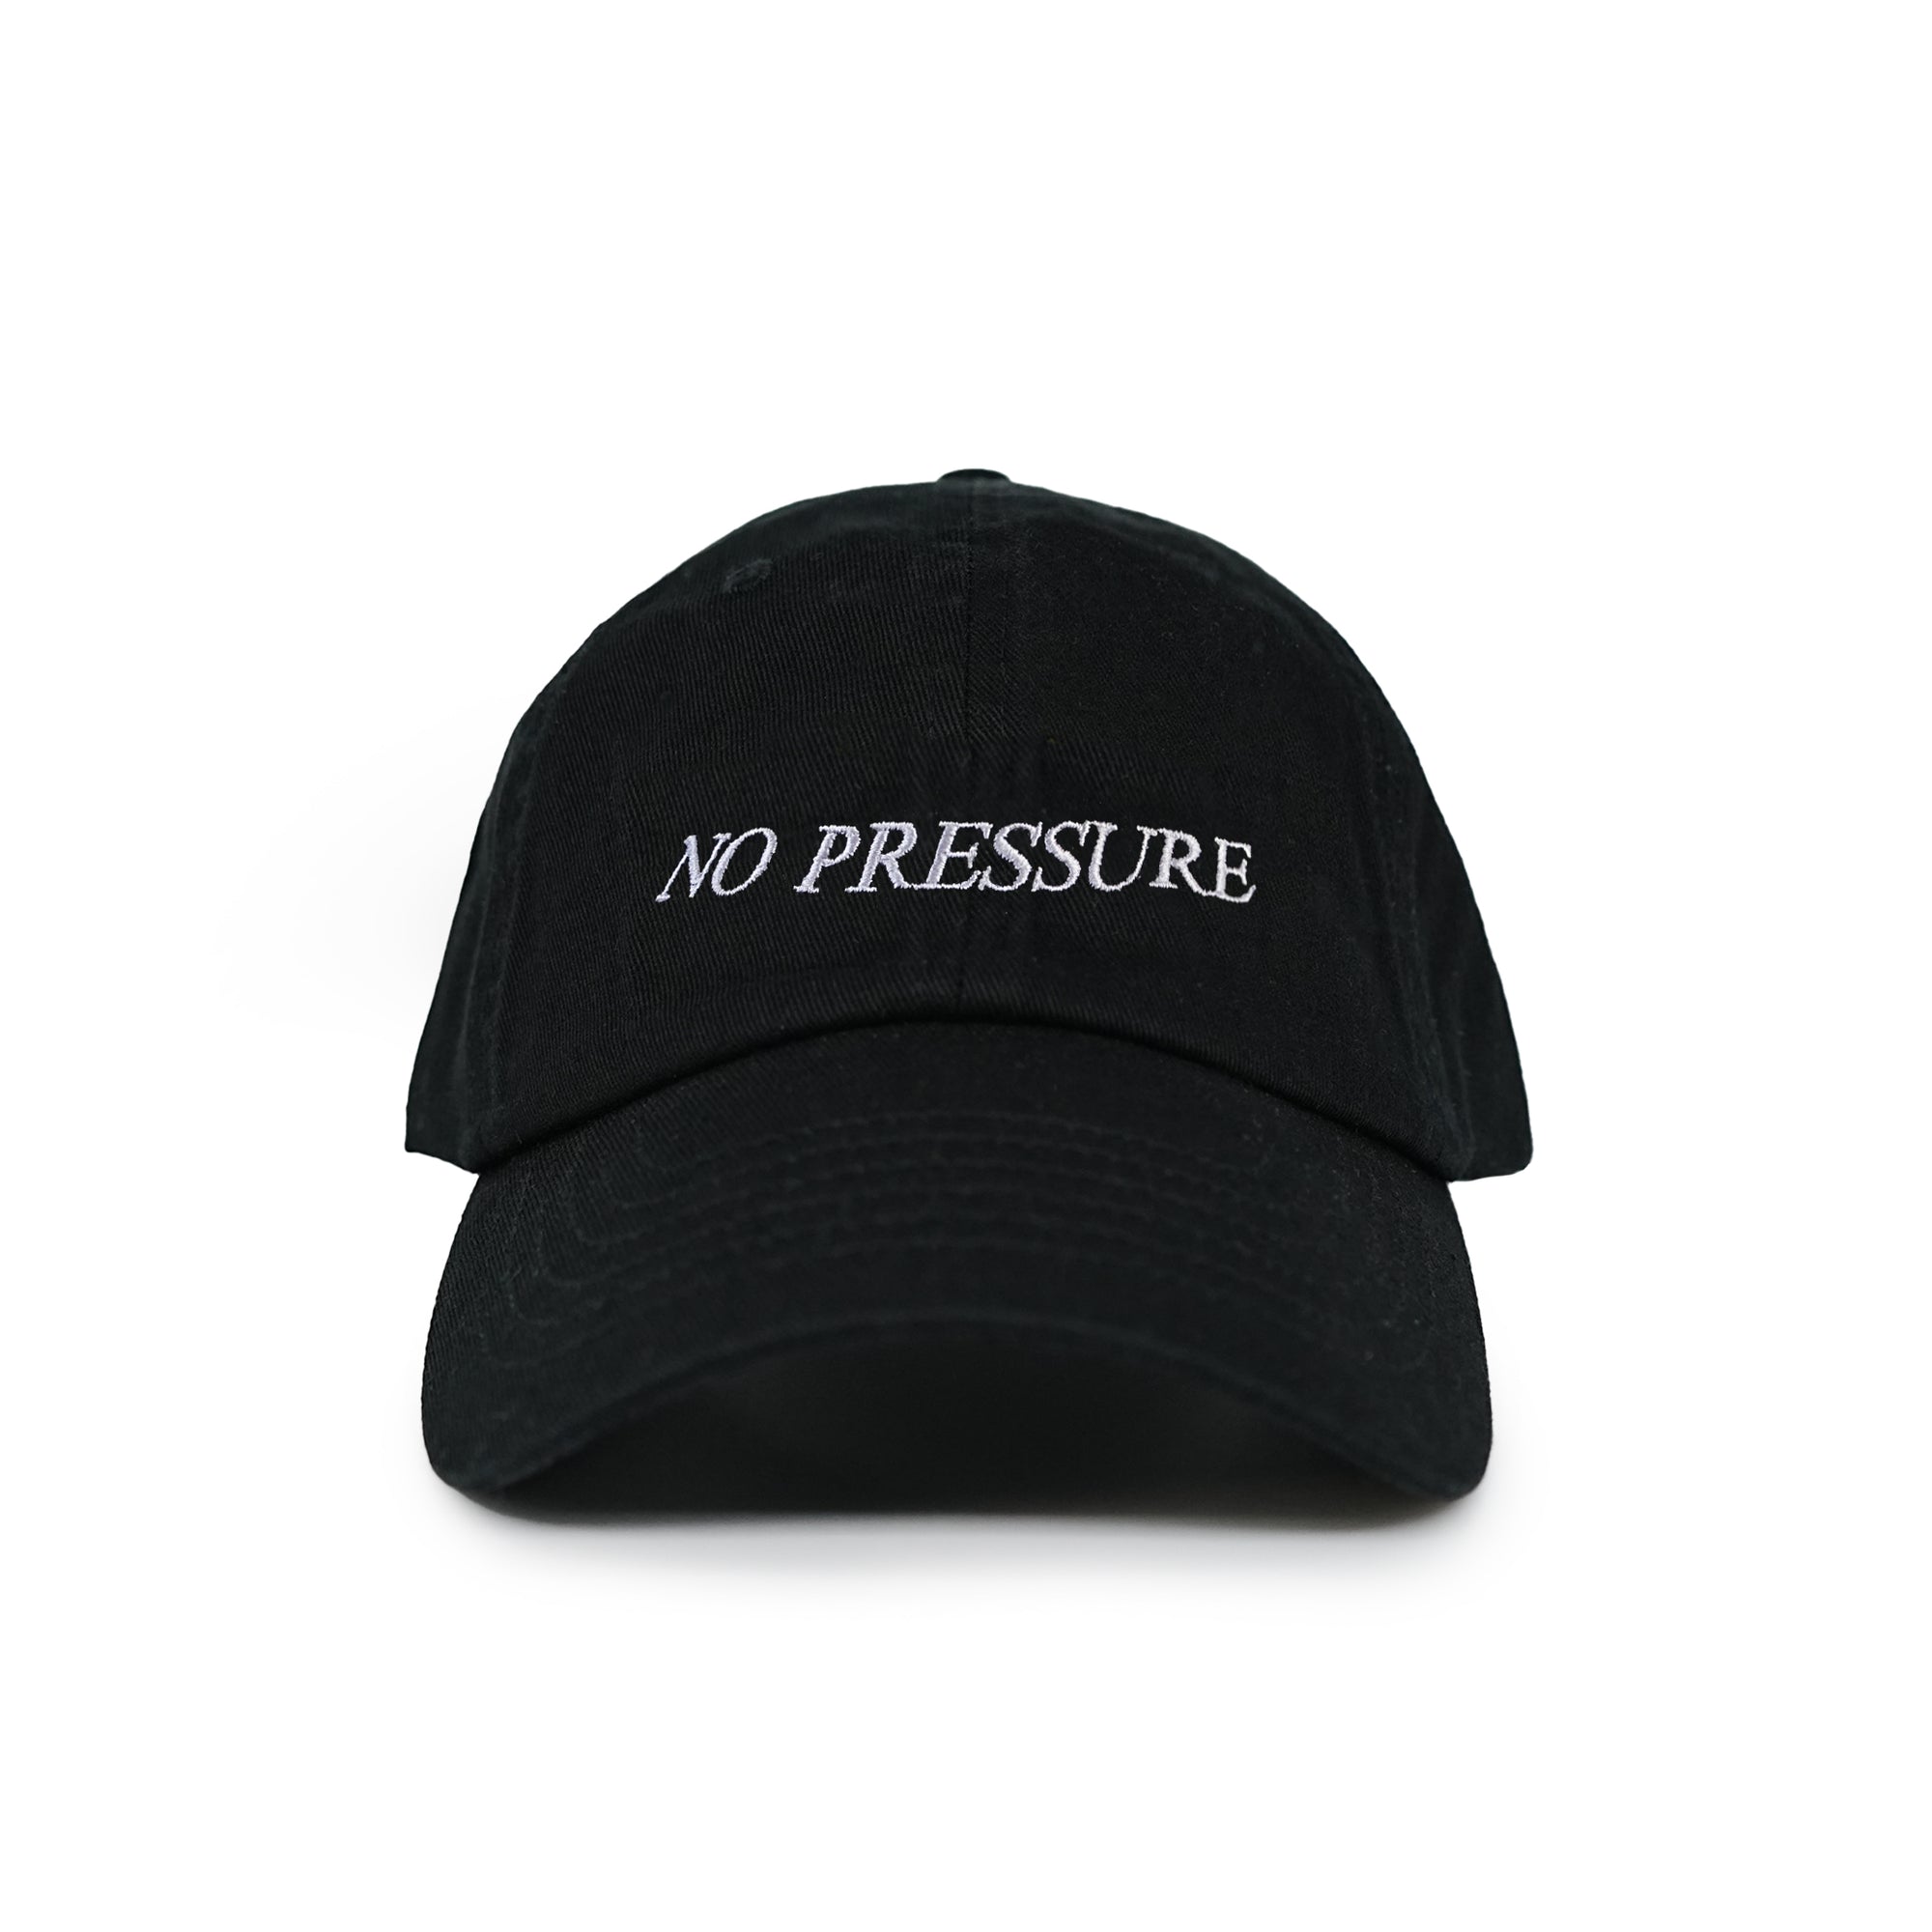 NO PRESSURE